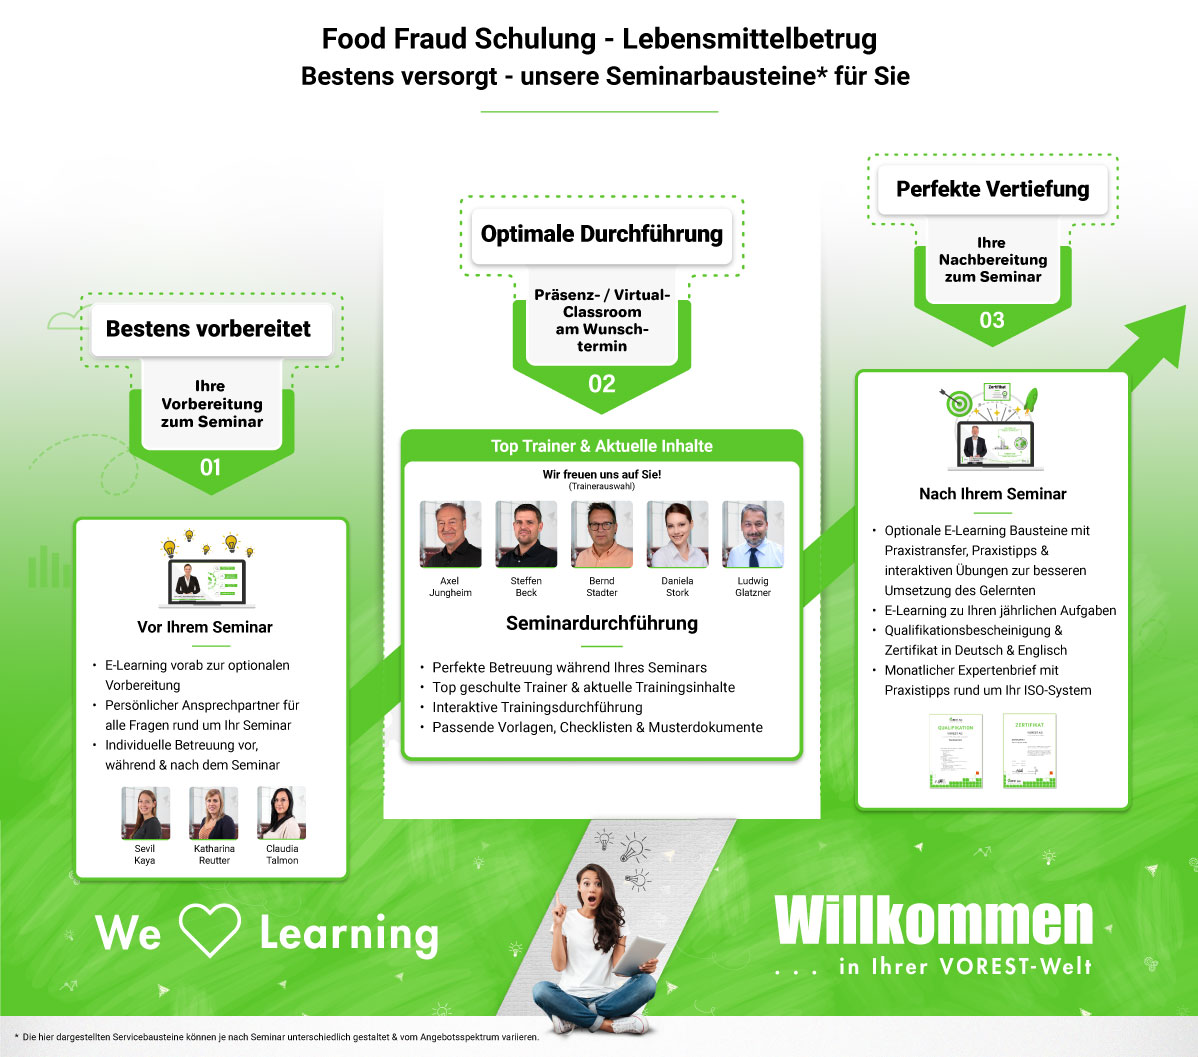 Food Fraud Schulung - Lebensmittelbetrug